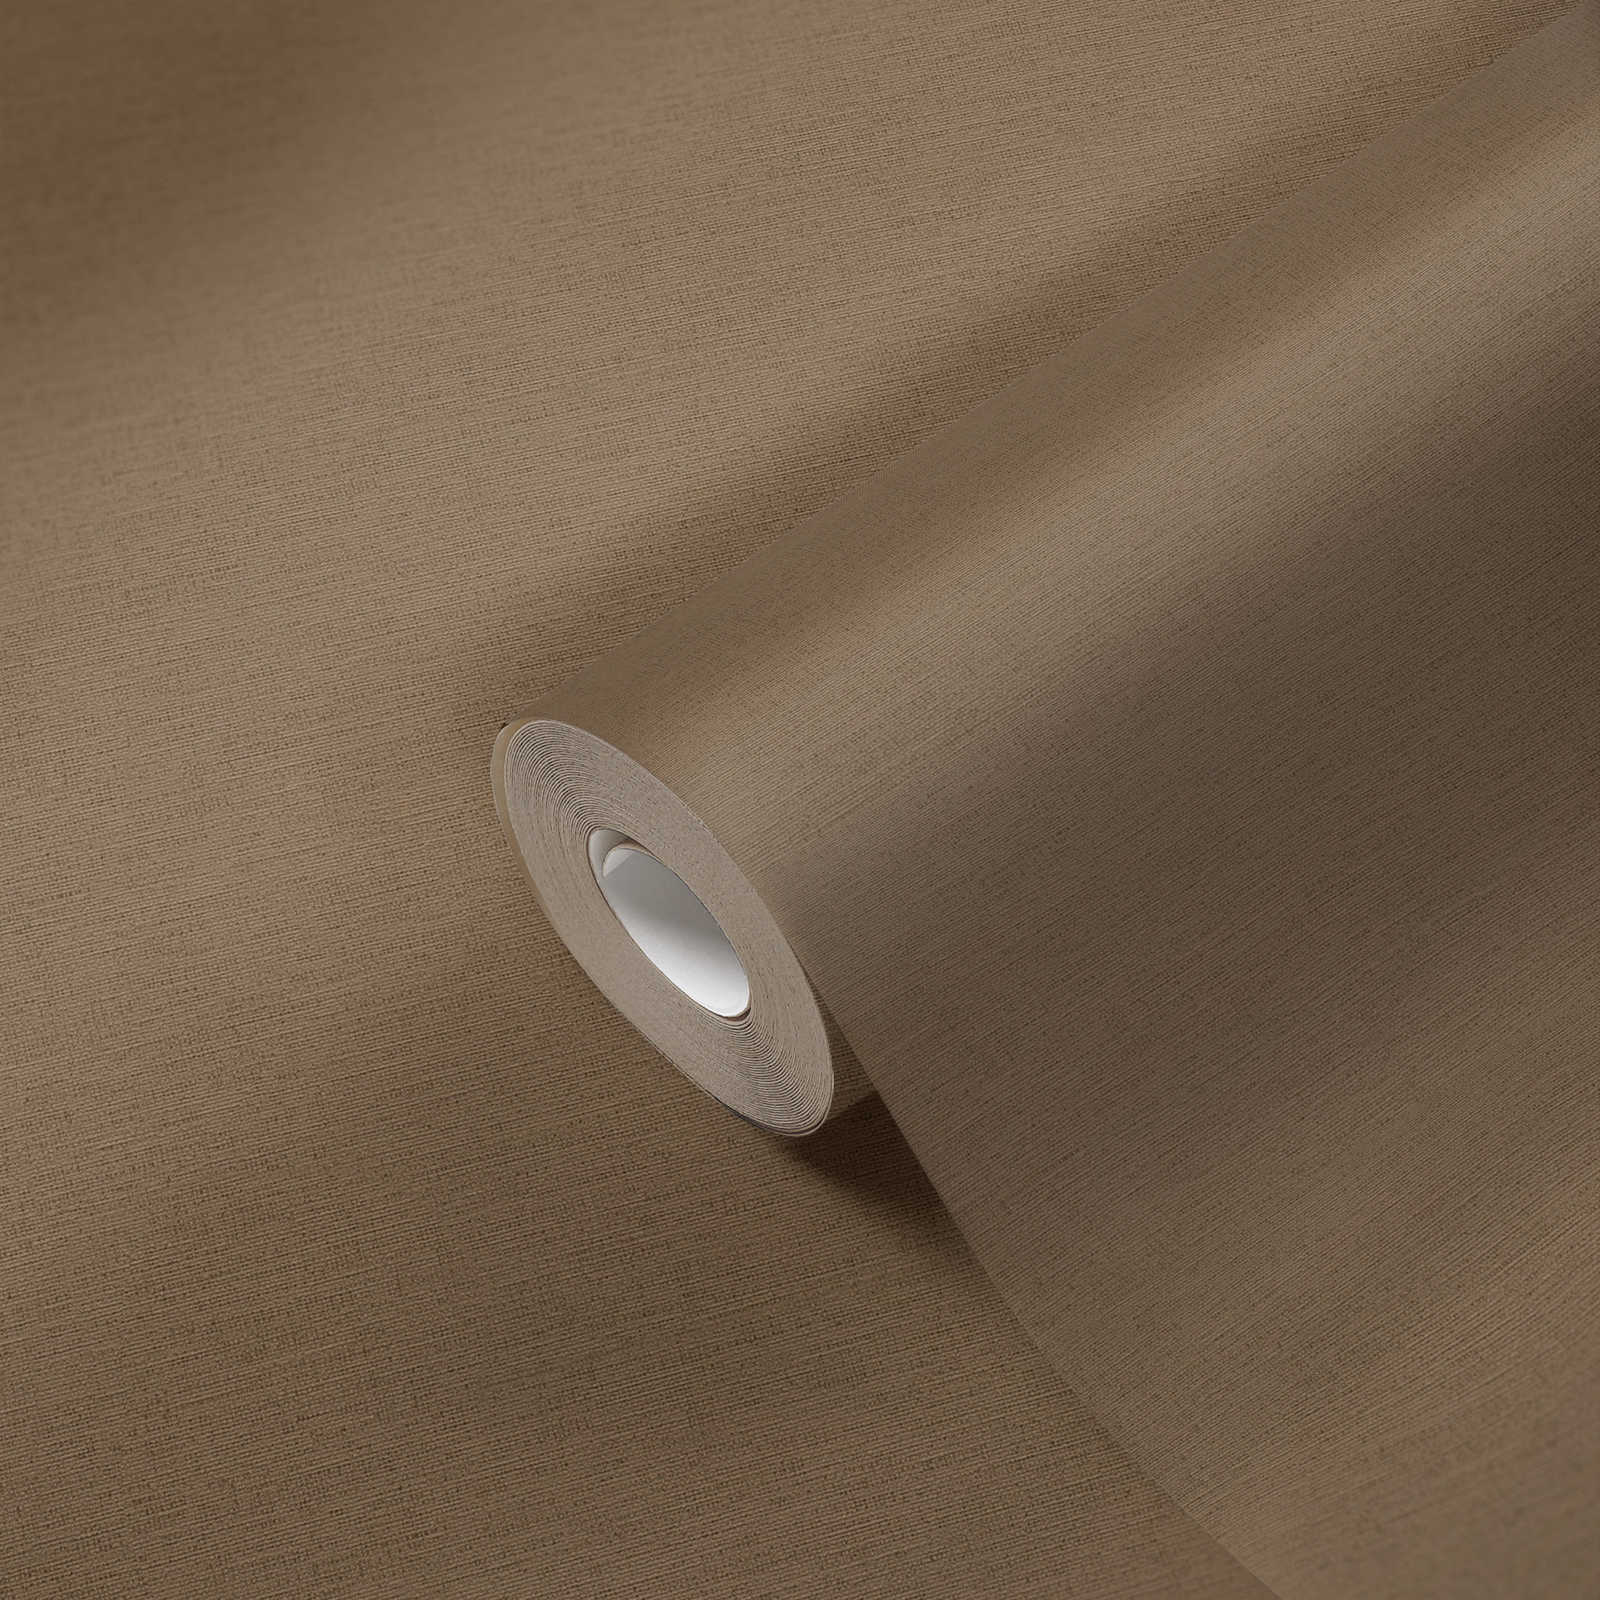             Wallpaper brown linen look & embossed structure in textile look
        